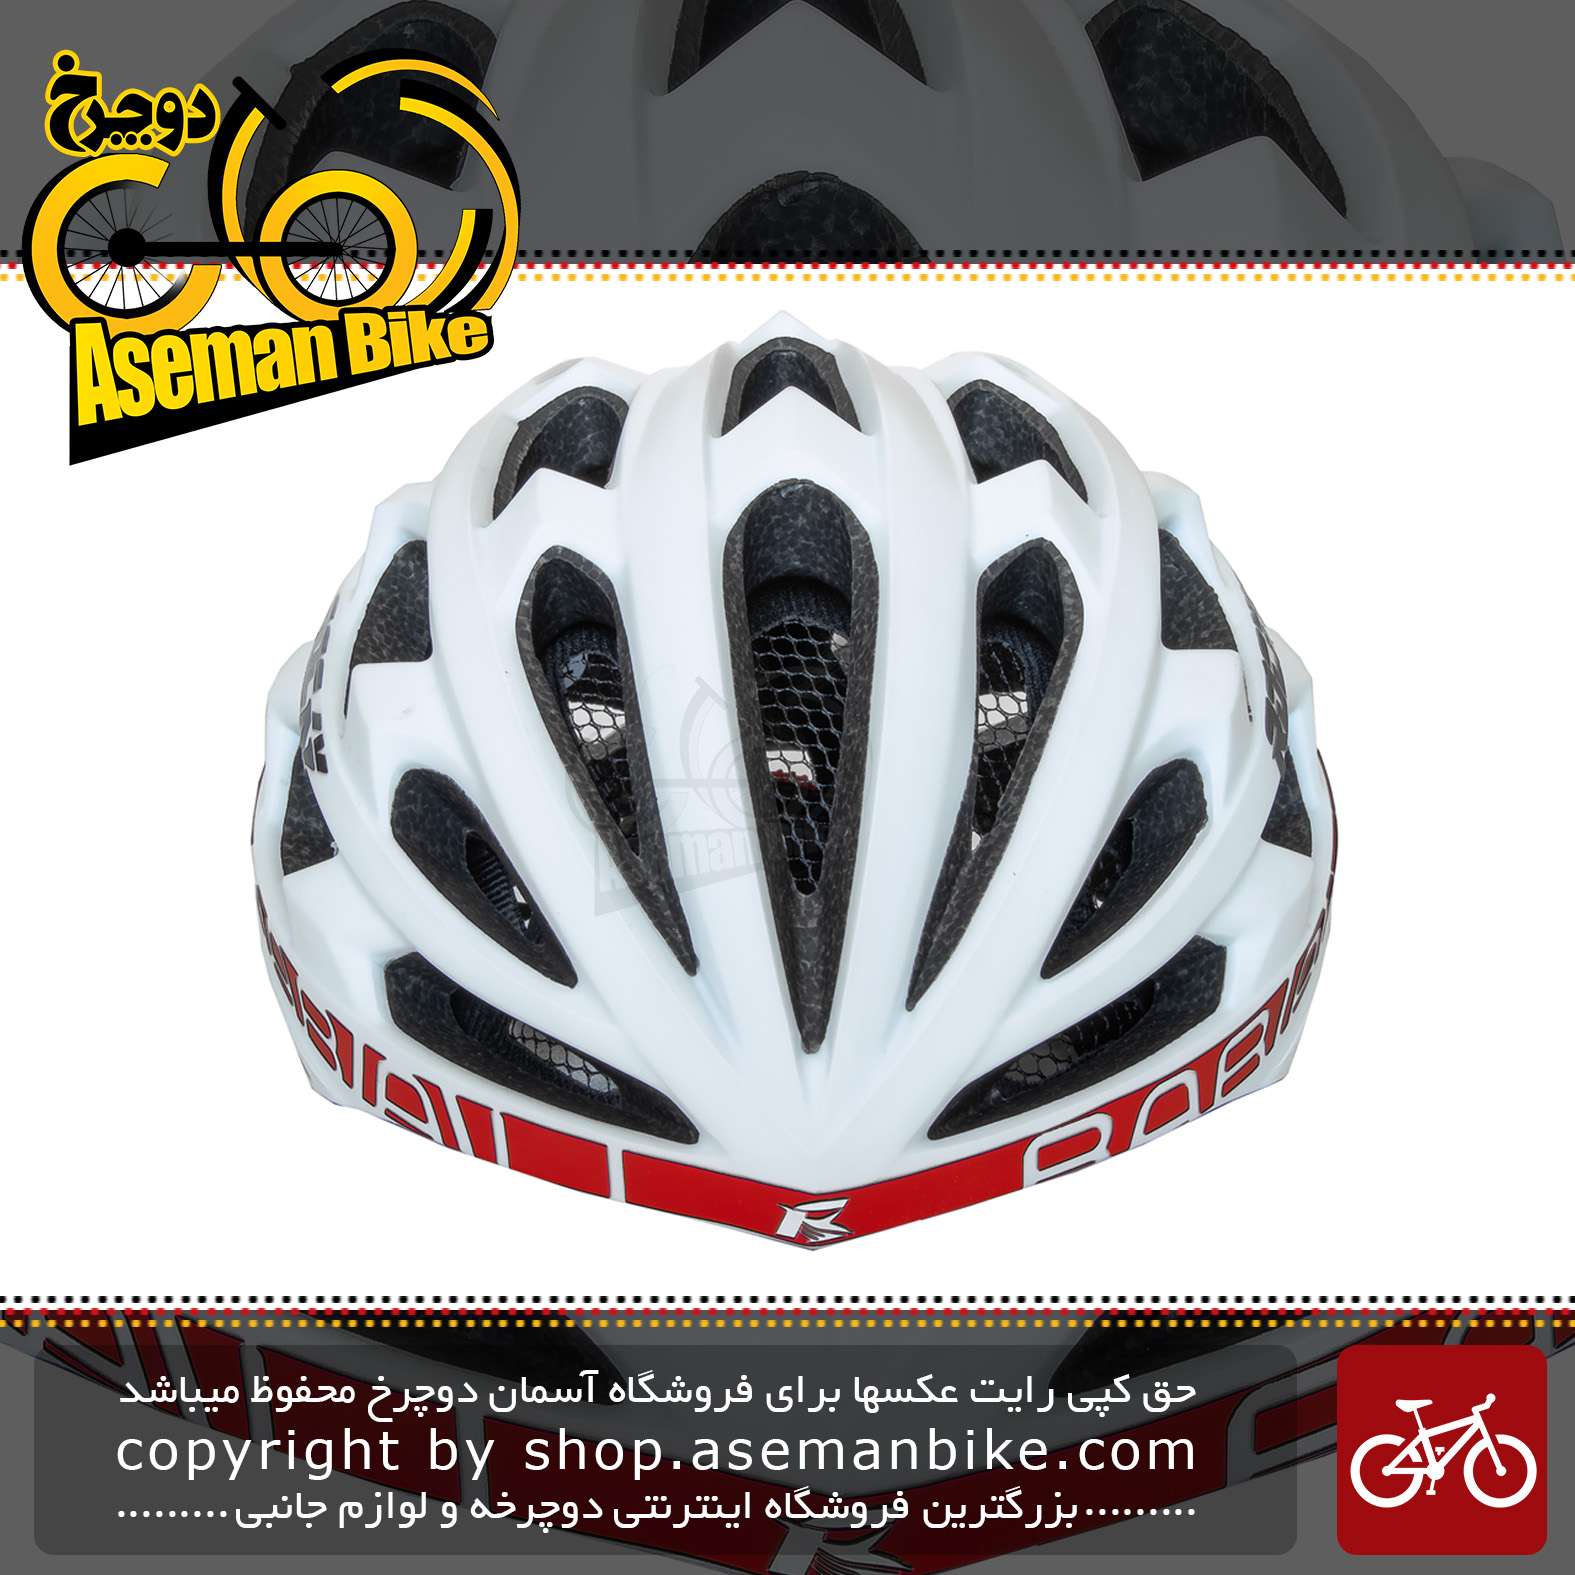 کلاه دوچرخه سواری راکی مدل KS29 سایز لارج رنگ سفید قرمز Helmet Bicycle Rocky KS29 Size L White & Red